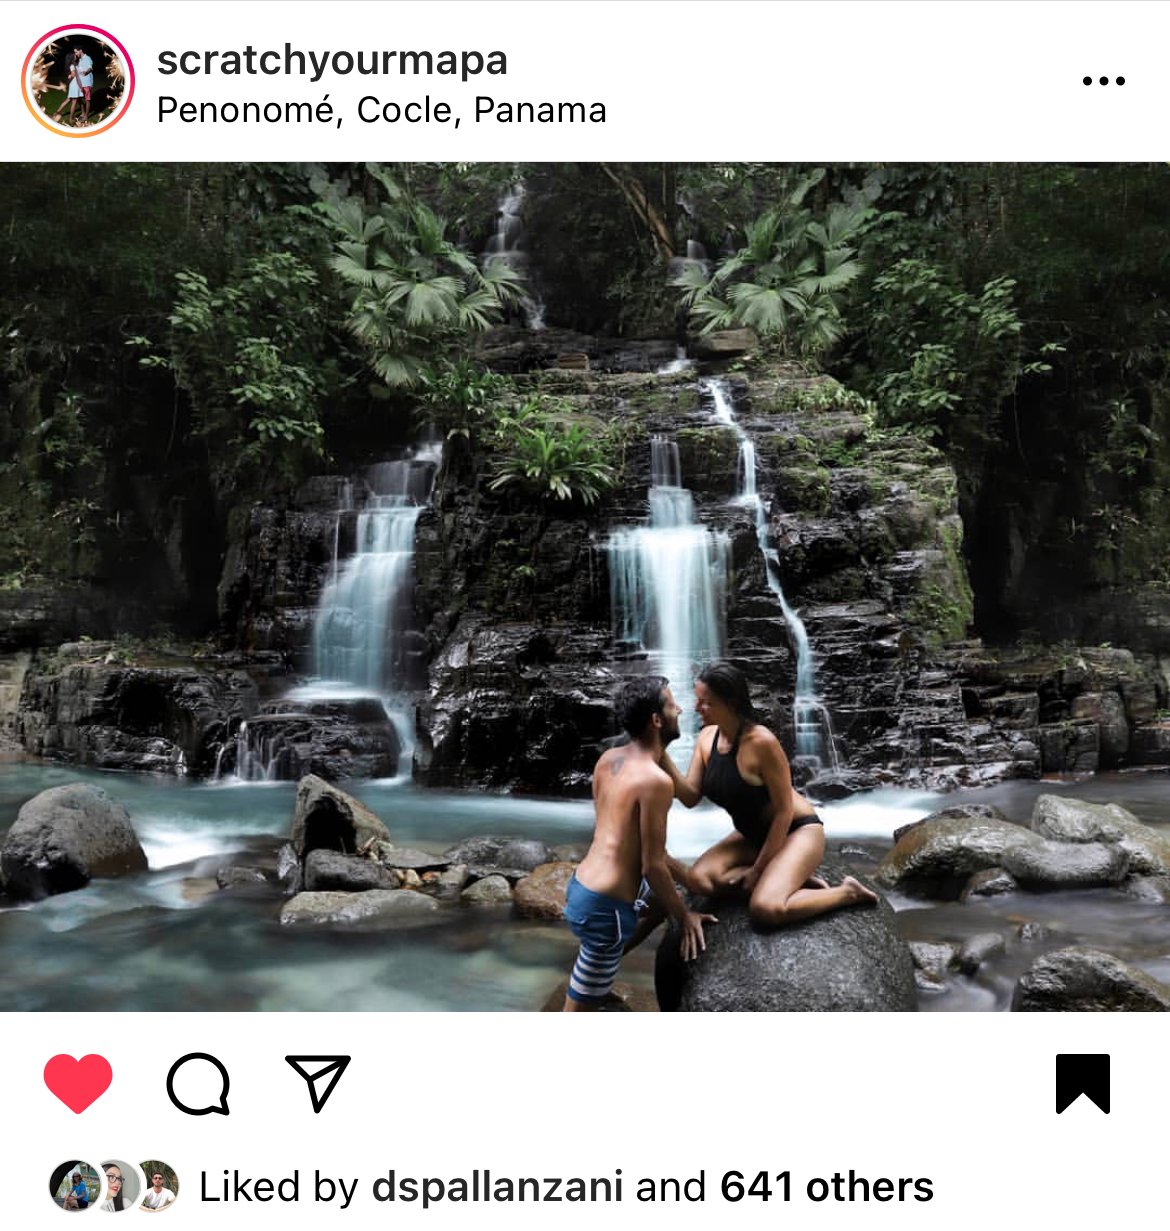 Pozo Azul waterfalls